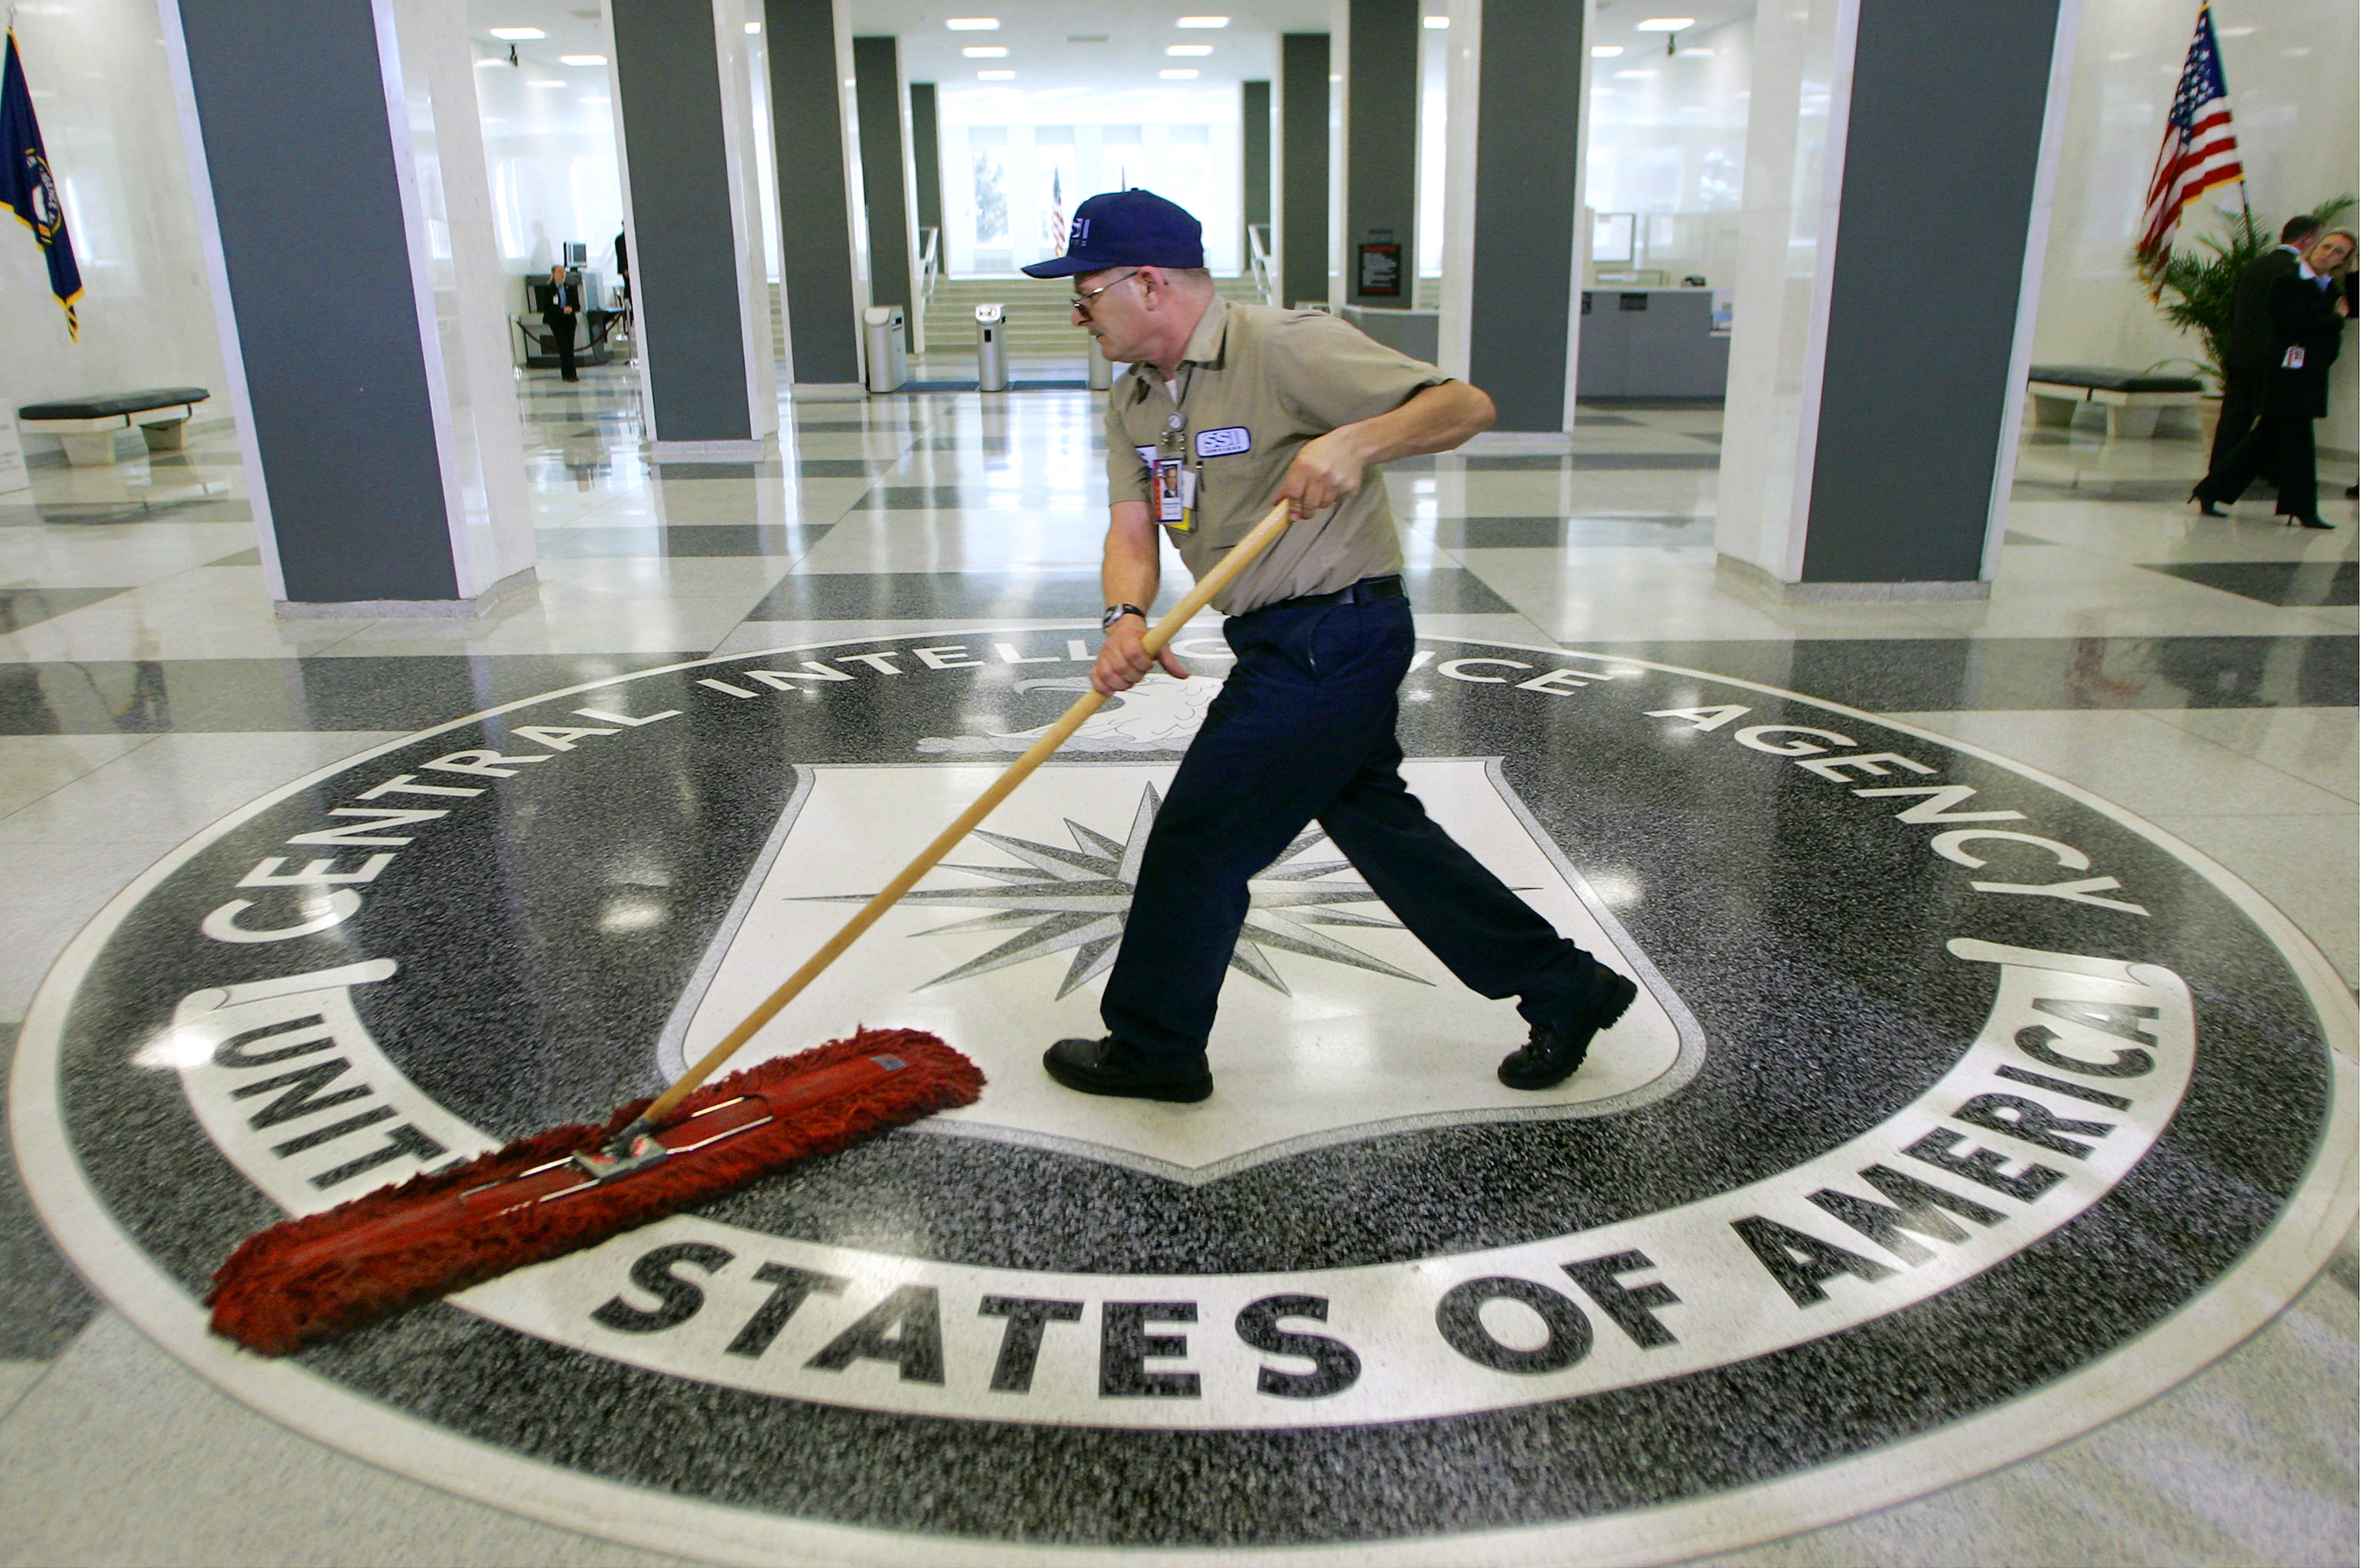 ΗΠΑ: Δικαιολογημένες οι πρακτικές της CIA ένατι υπόπτων τρομοκρατίας